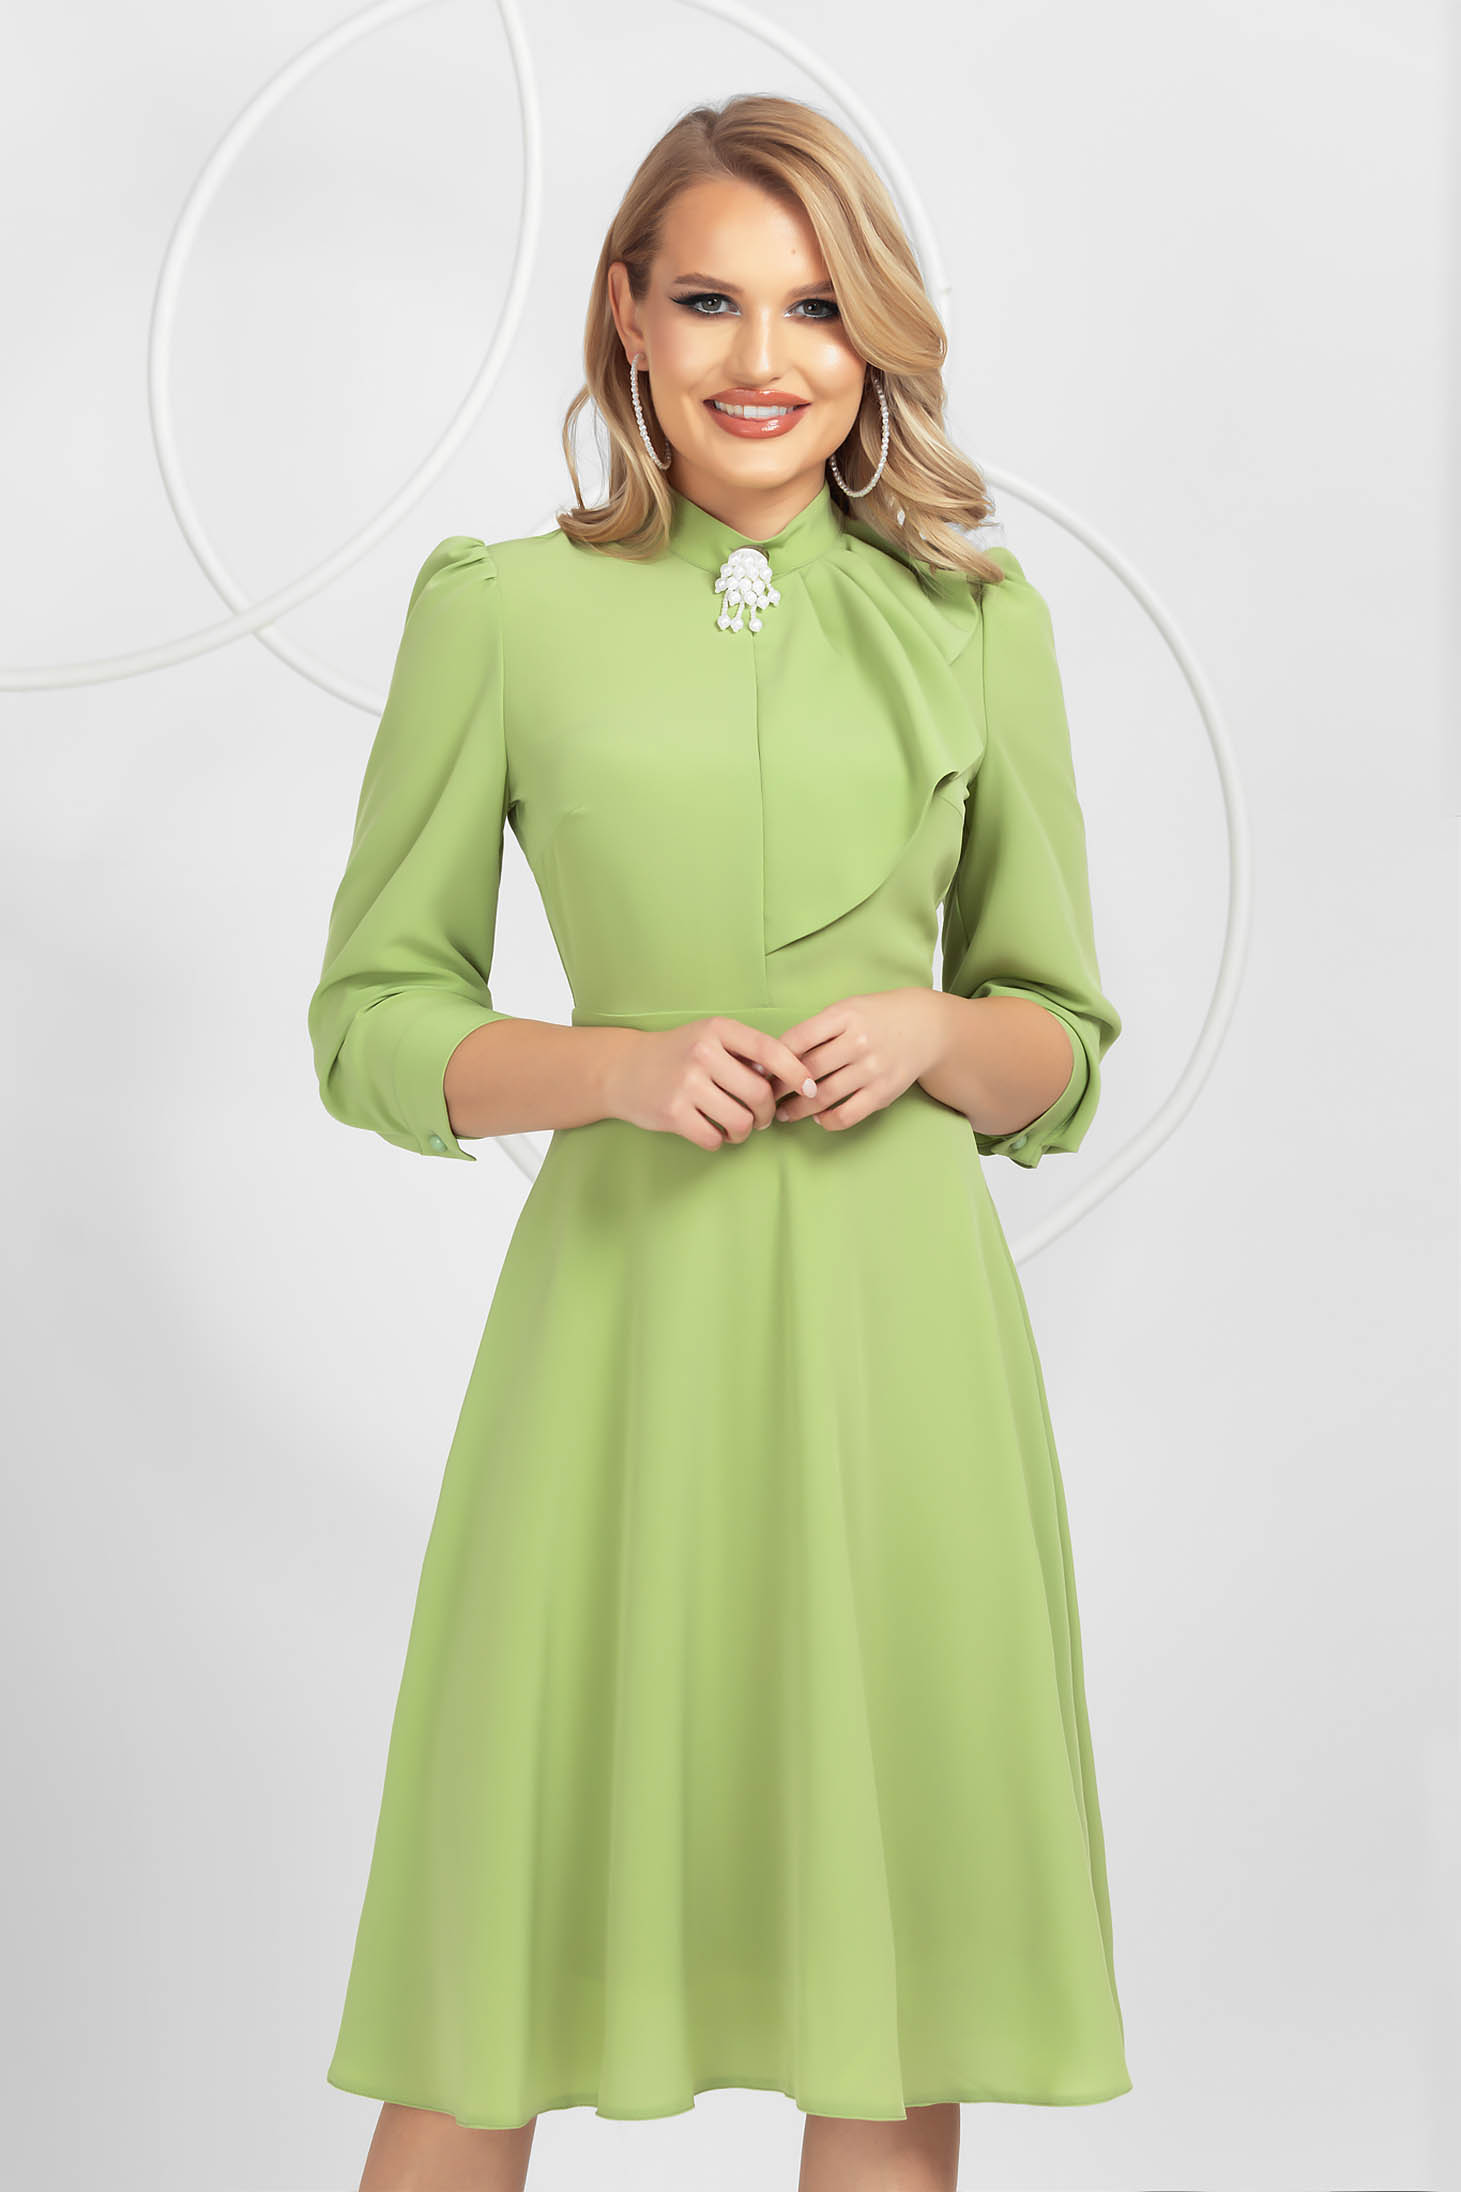 Világos zöld harang ruha muszlinból bross kiegészítővel 1 - StarShinerS.hu